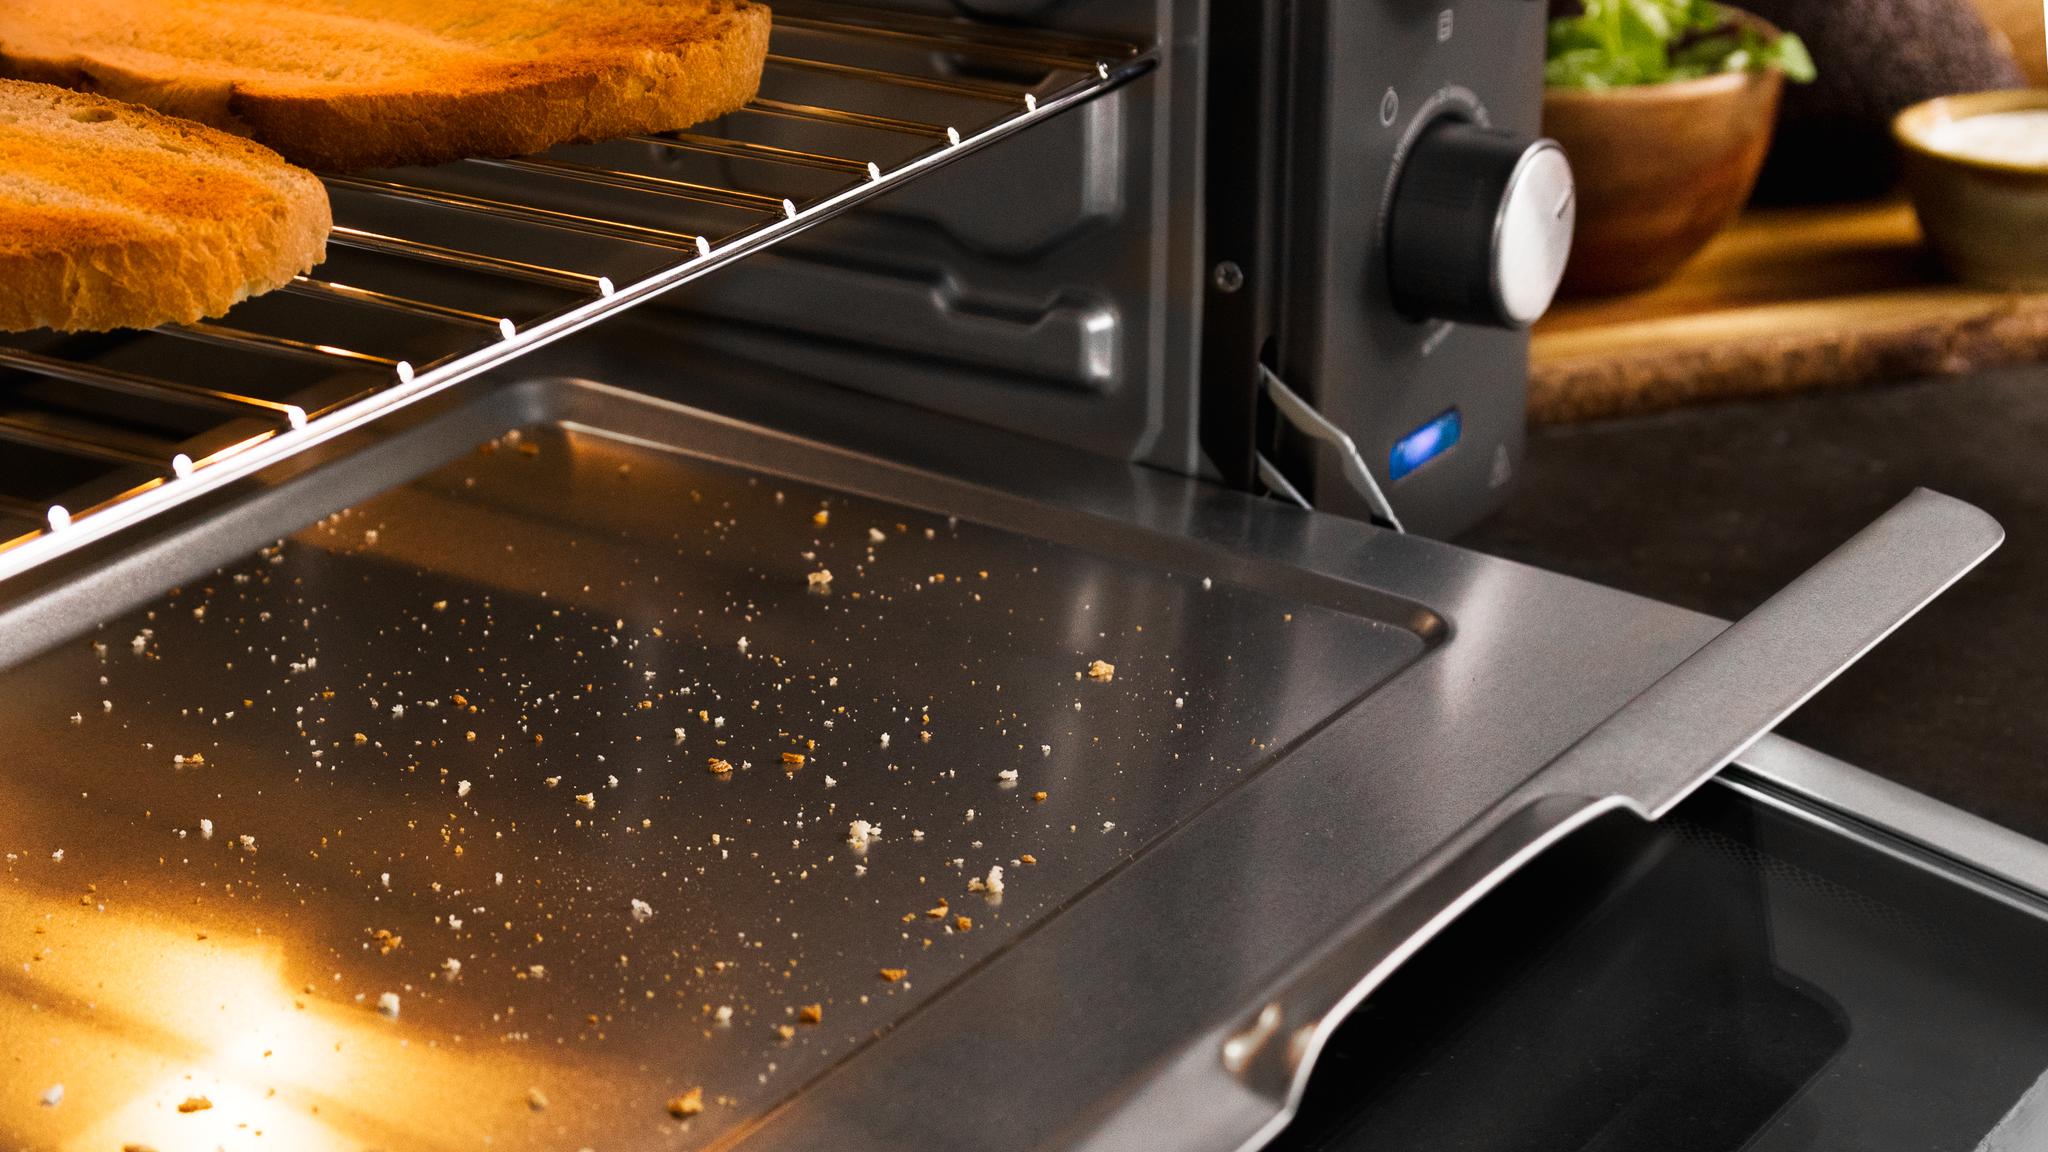 Grazie al vassoio raccogli-briciole, il forno a convezione è molto facile da pulire. Potrai sempre averlo pronto e preparato per qualsiasi preparazione.